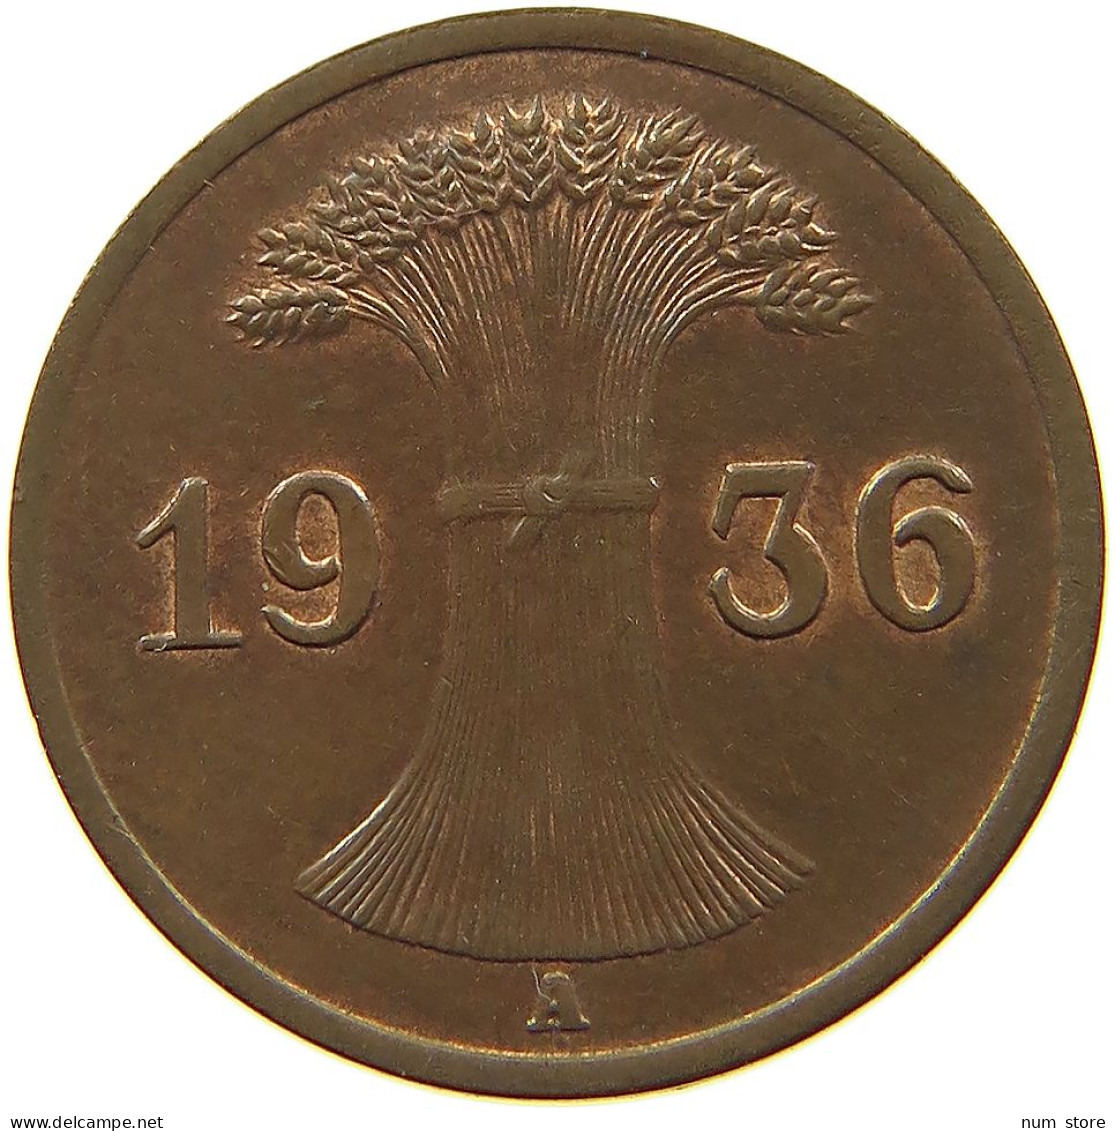 WEIMARER REPUBLIK REICHSPFENNIG 1936 A  #MA 100187 - 1 Rentenpfennig & 1 Reichspfennig